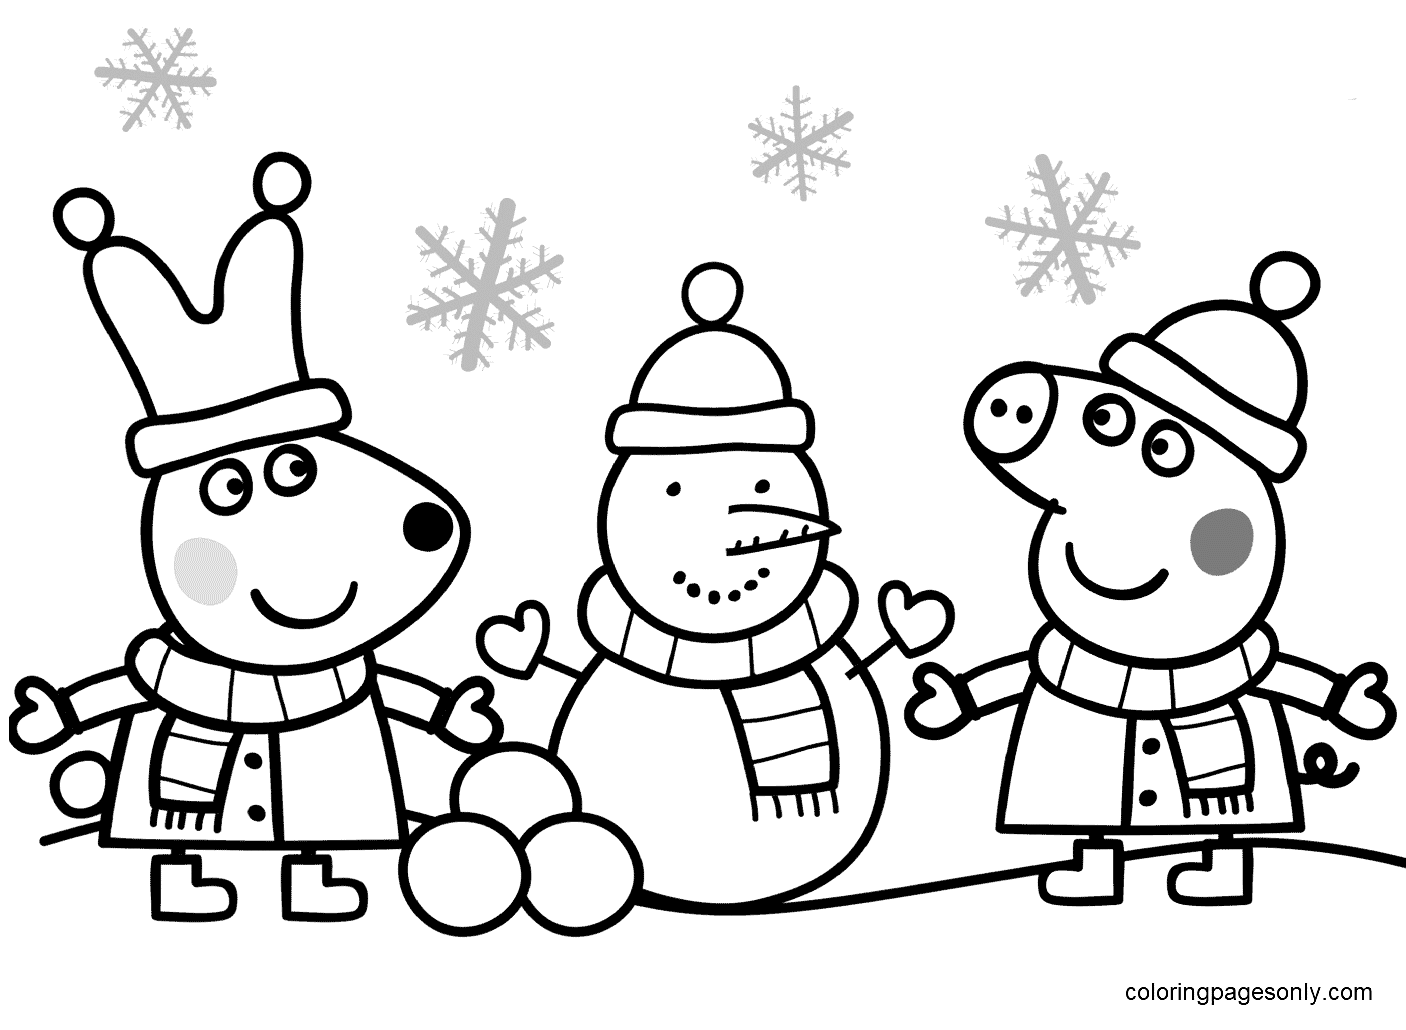 Peppa e Rebecca estão fazendo boneco de neve da Peppa Pig